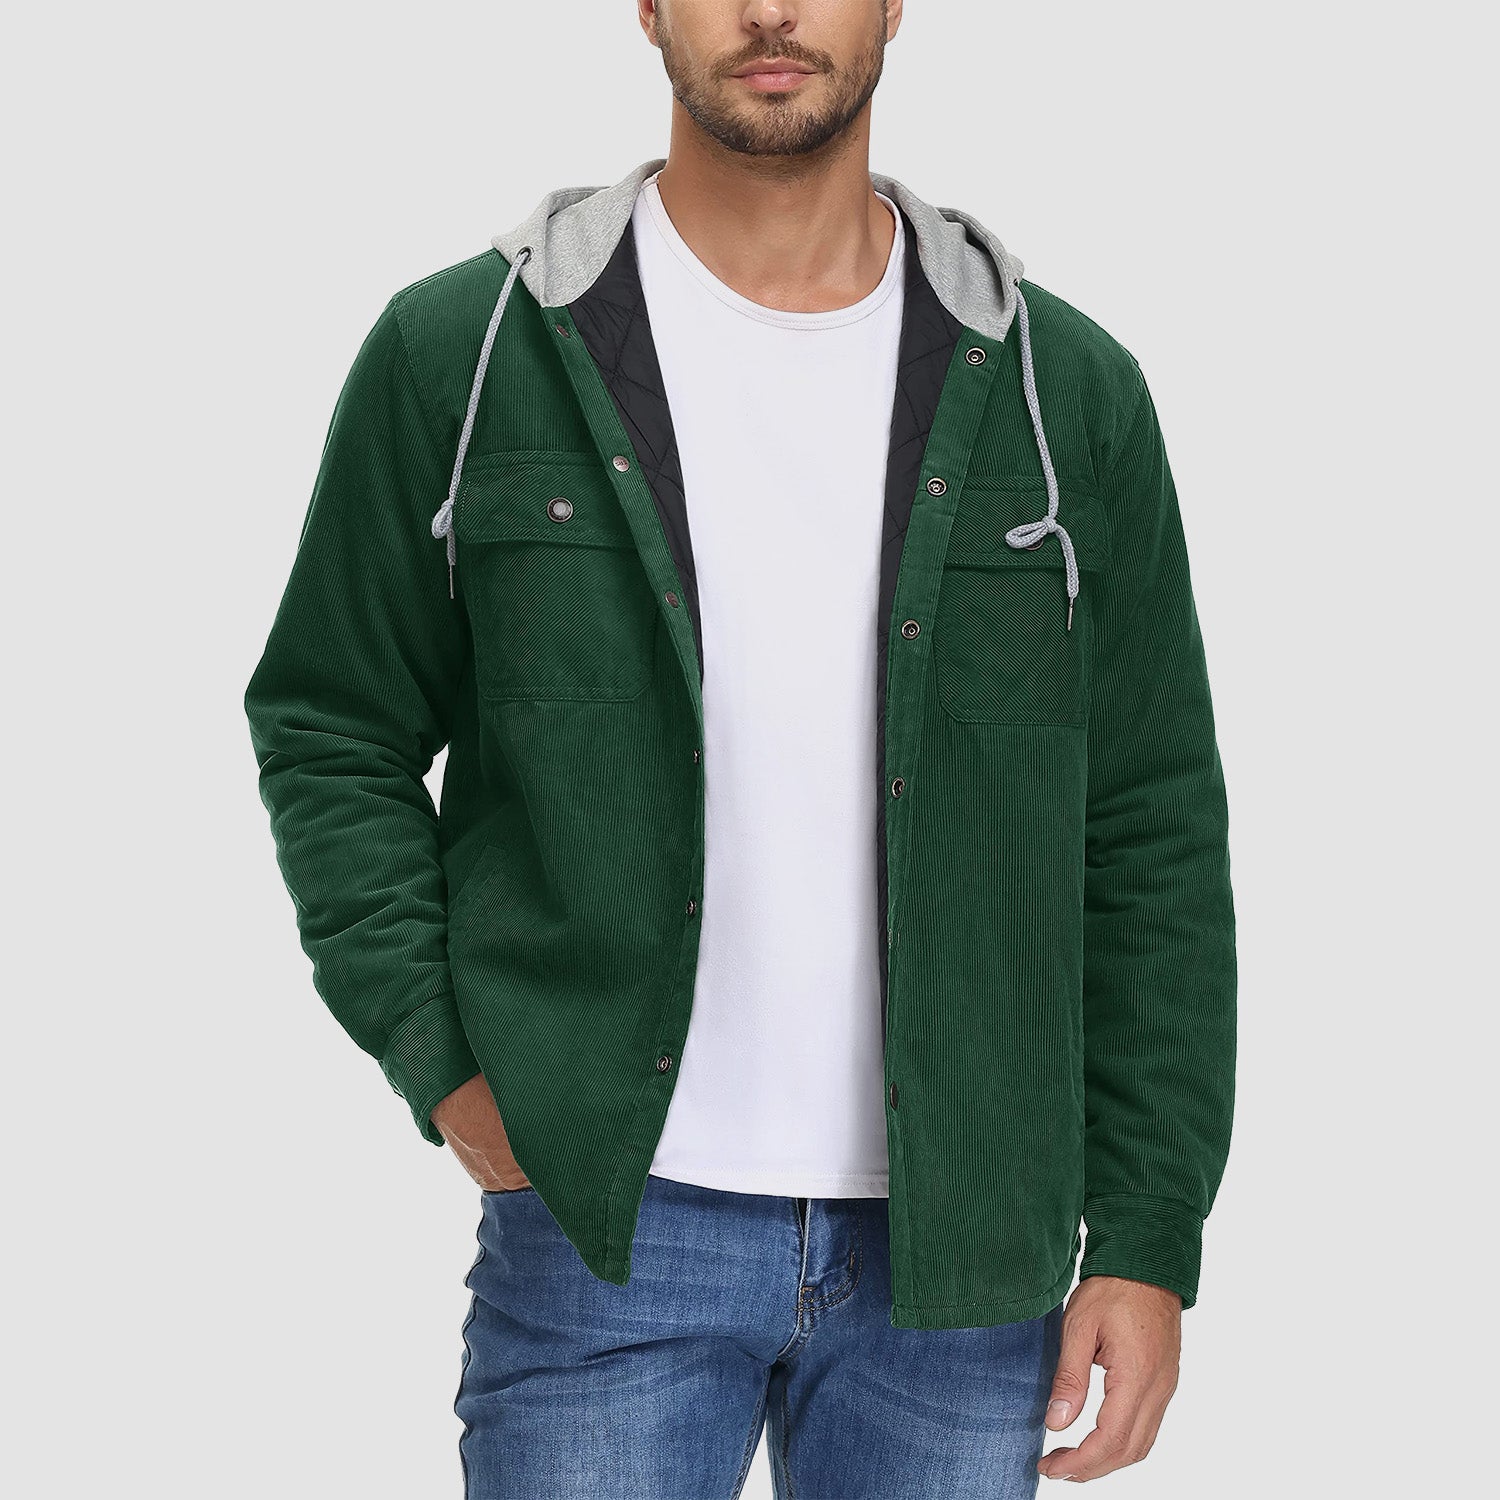 Men Denim Jacket Workwear Button Tops Long sleeve Coat Casual StreetwearY |  eBay